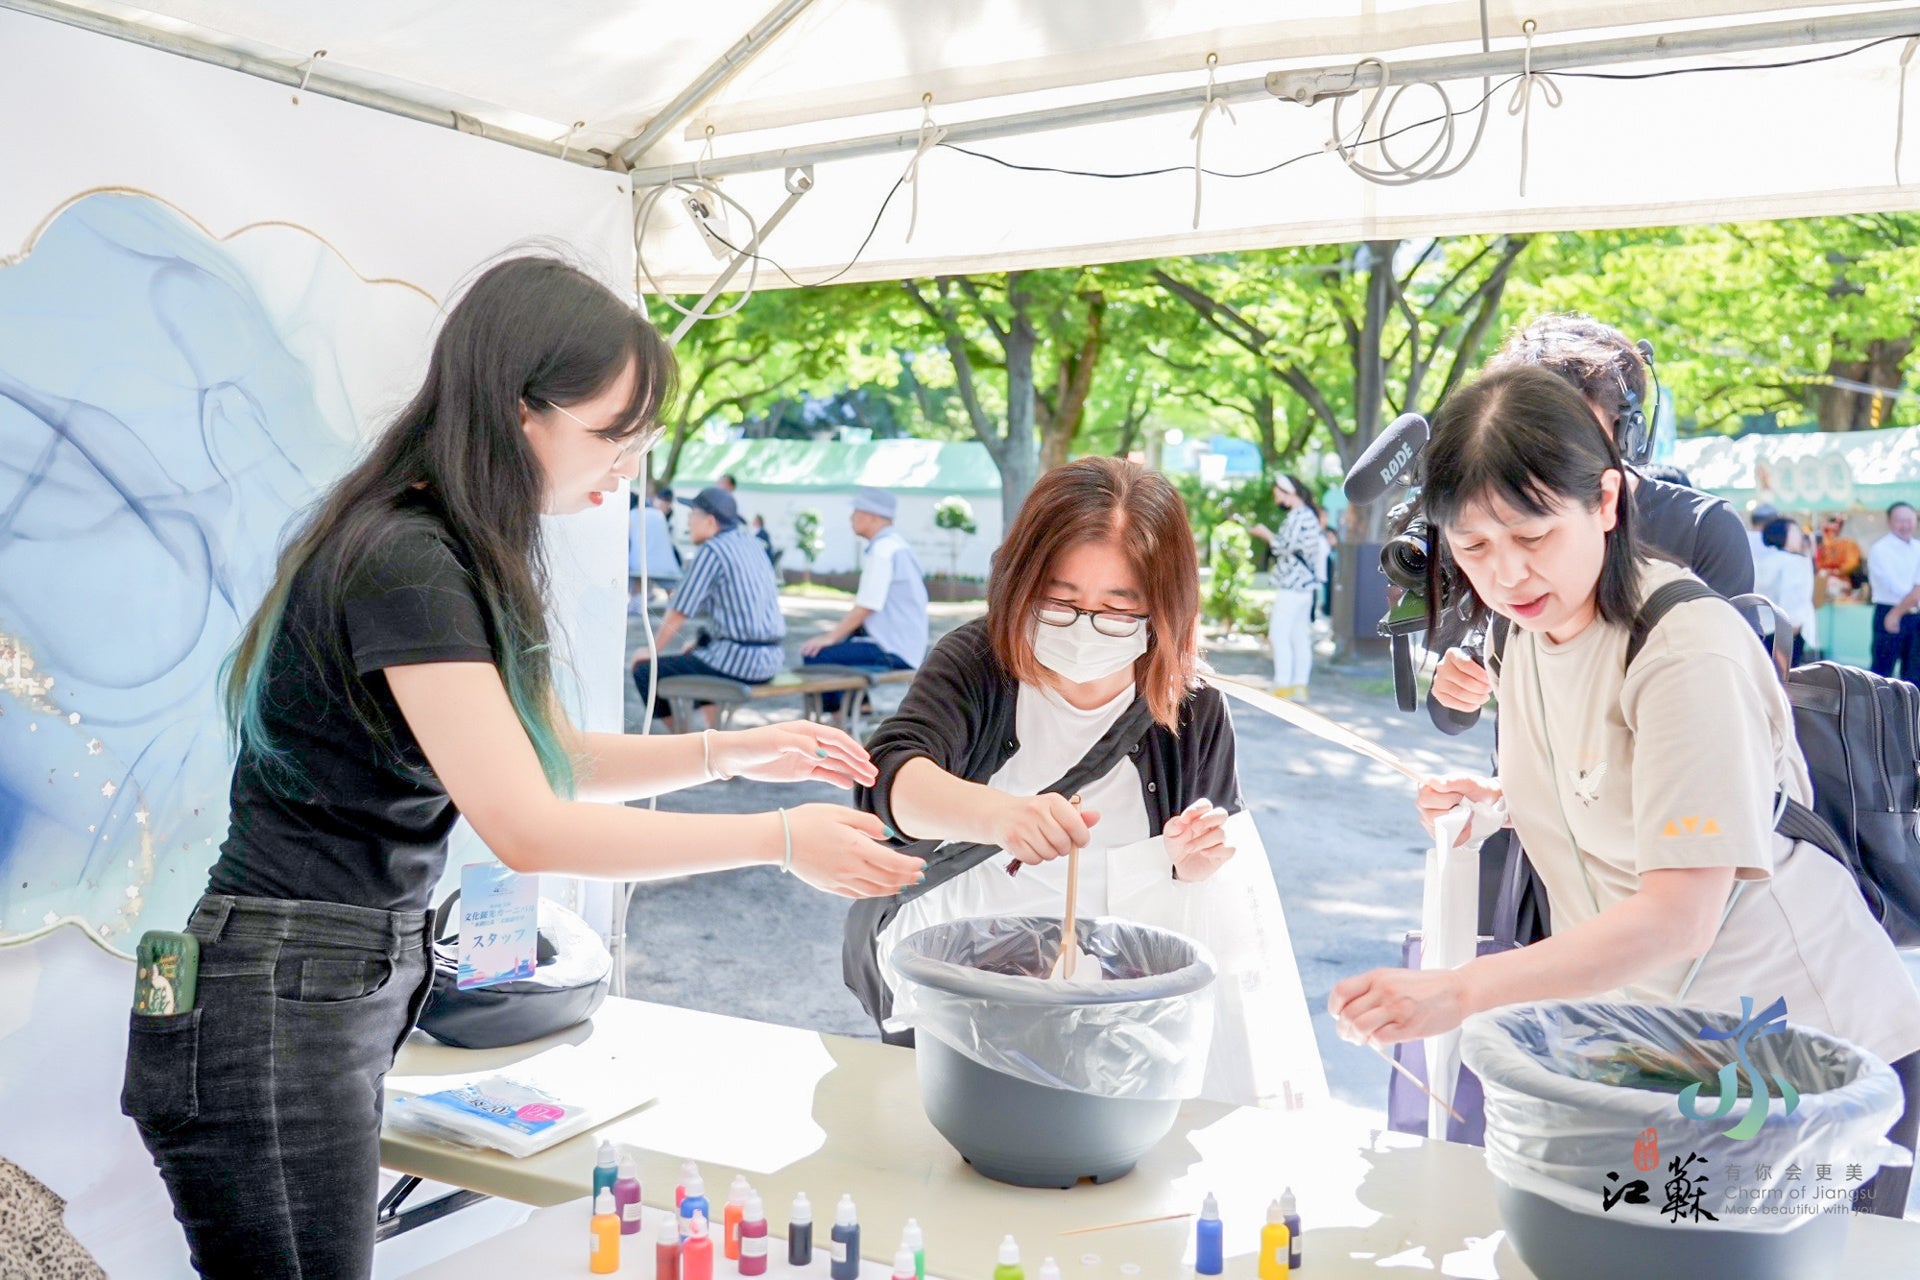 「水の趣 江蘇」文化観光カーニバル、福岡の夜の帷に輝く東方の夢